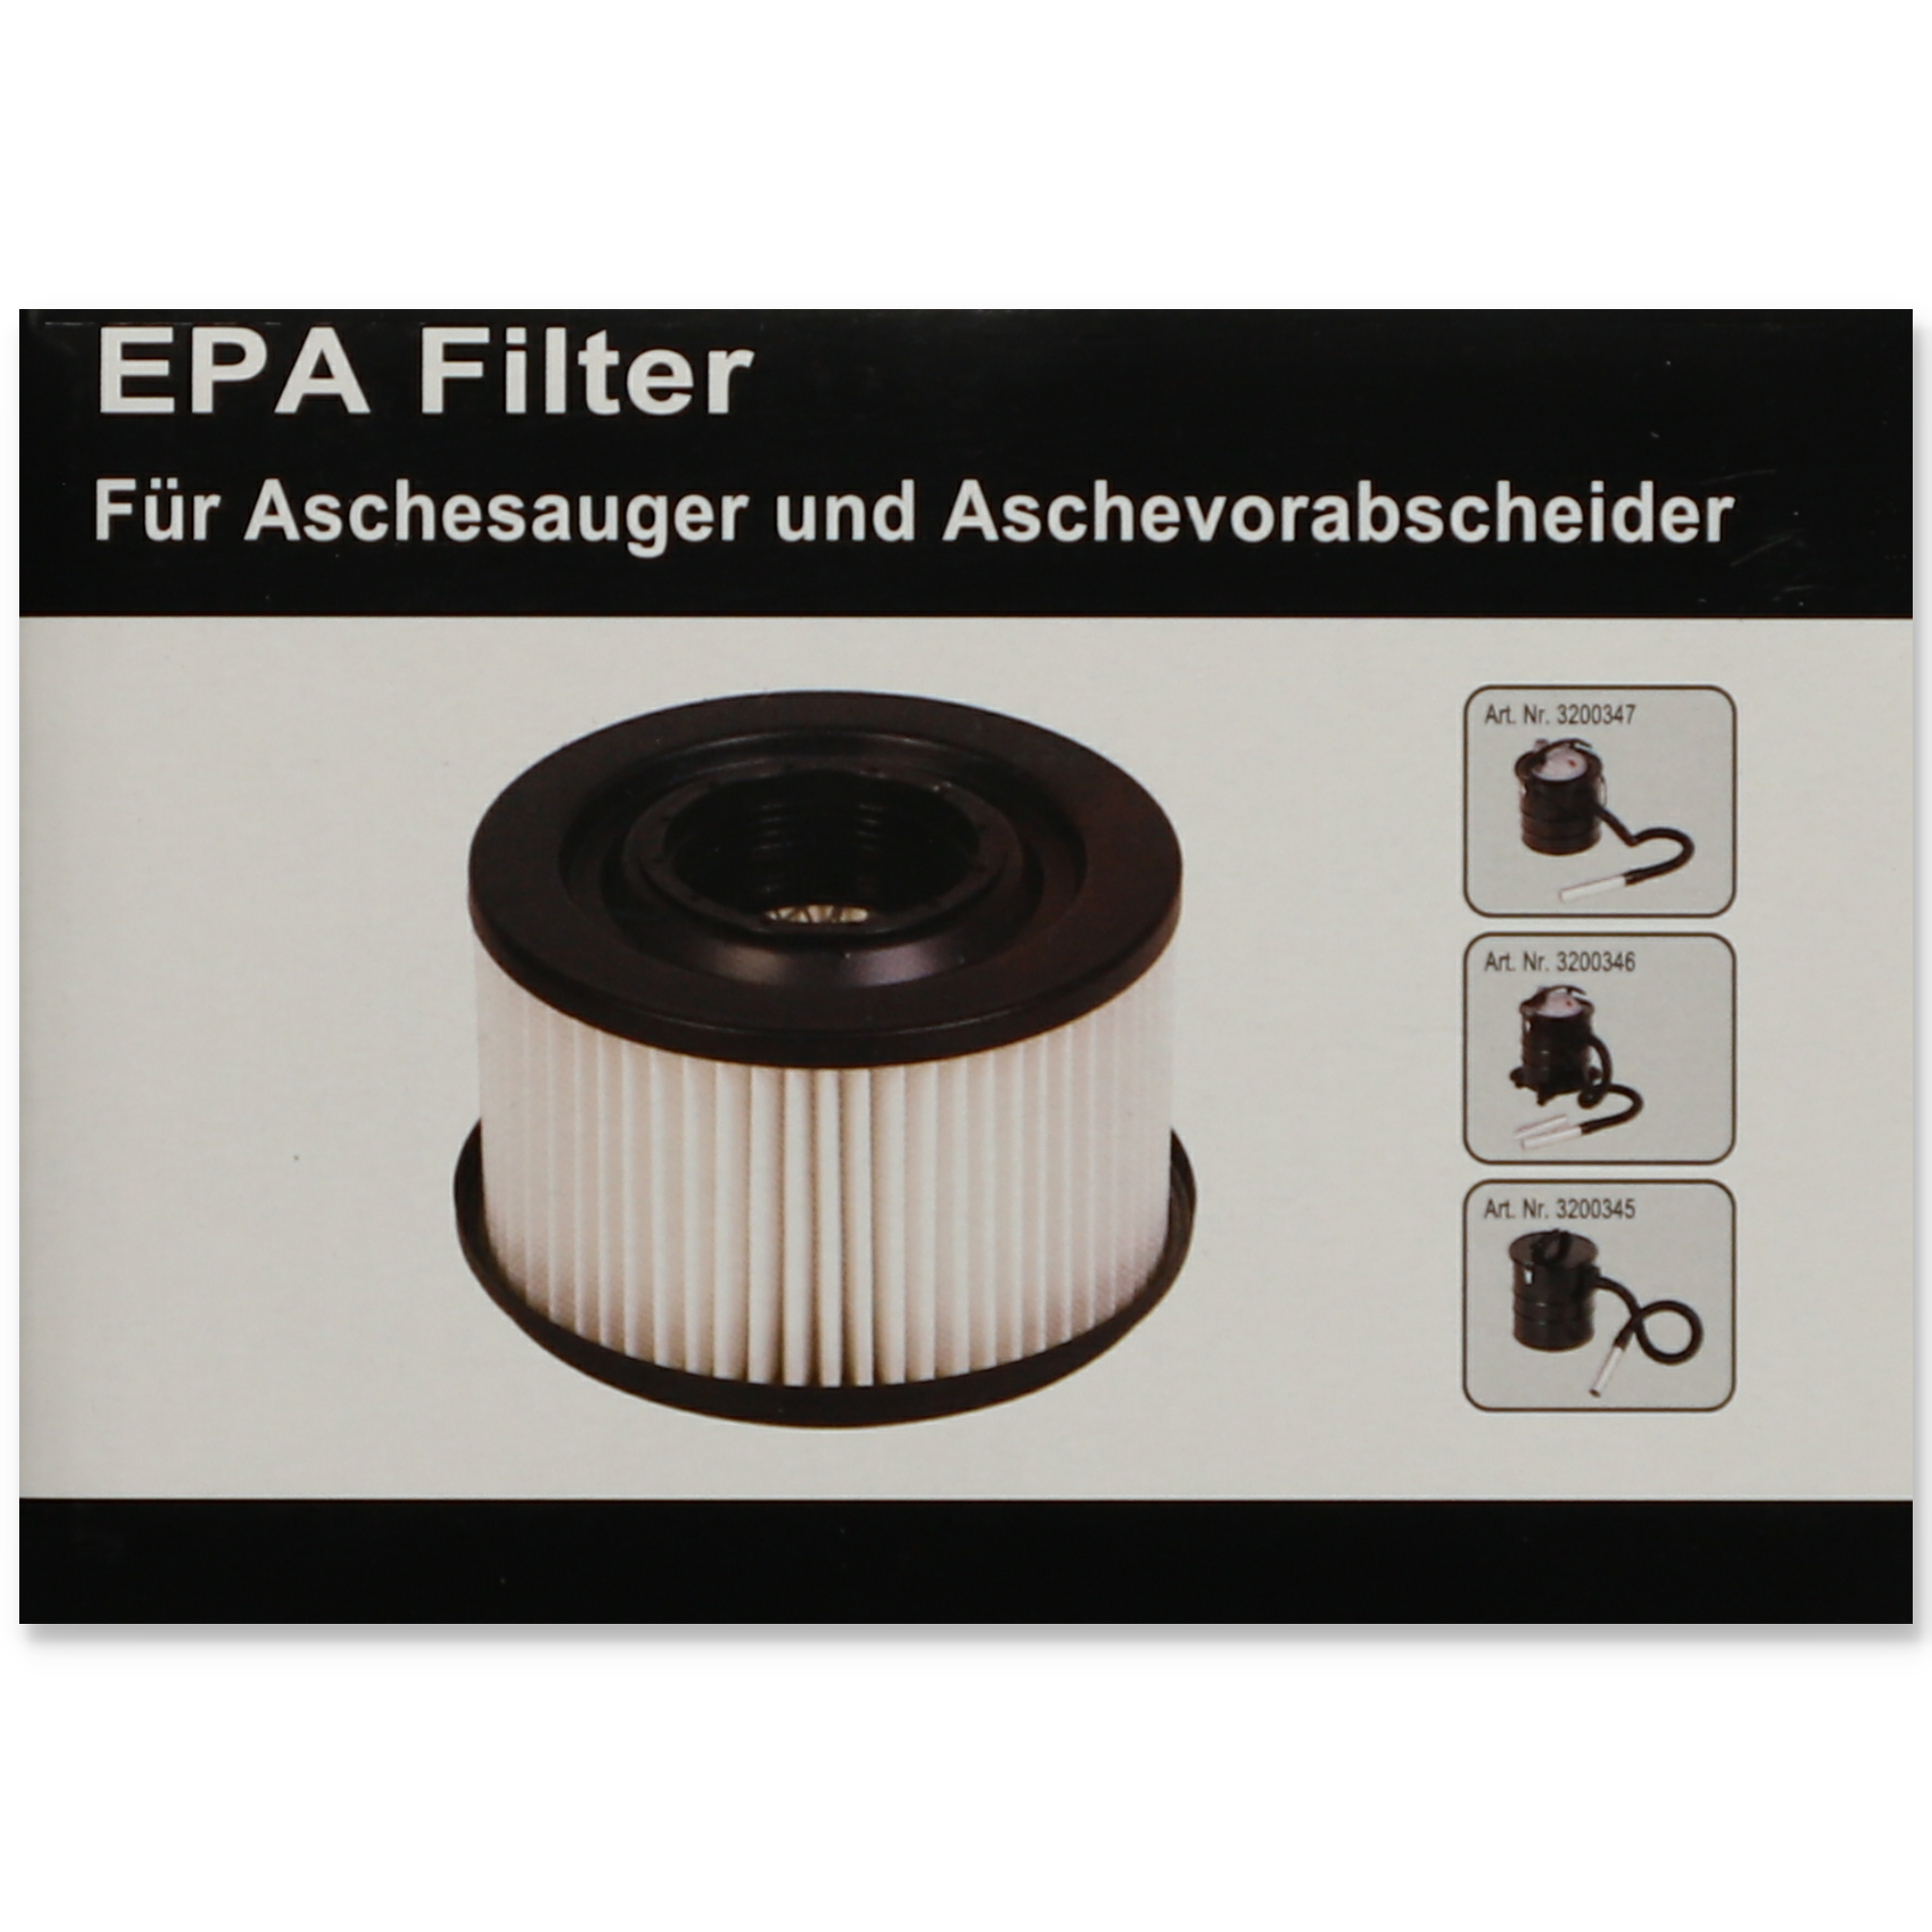 EPA-Filter für Aschesauger und Aschevorabscheider + product picture